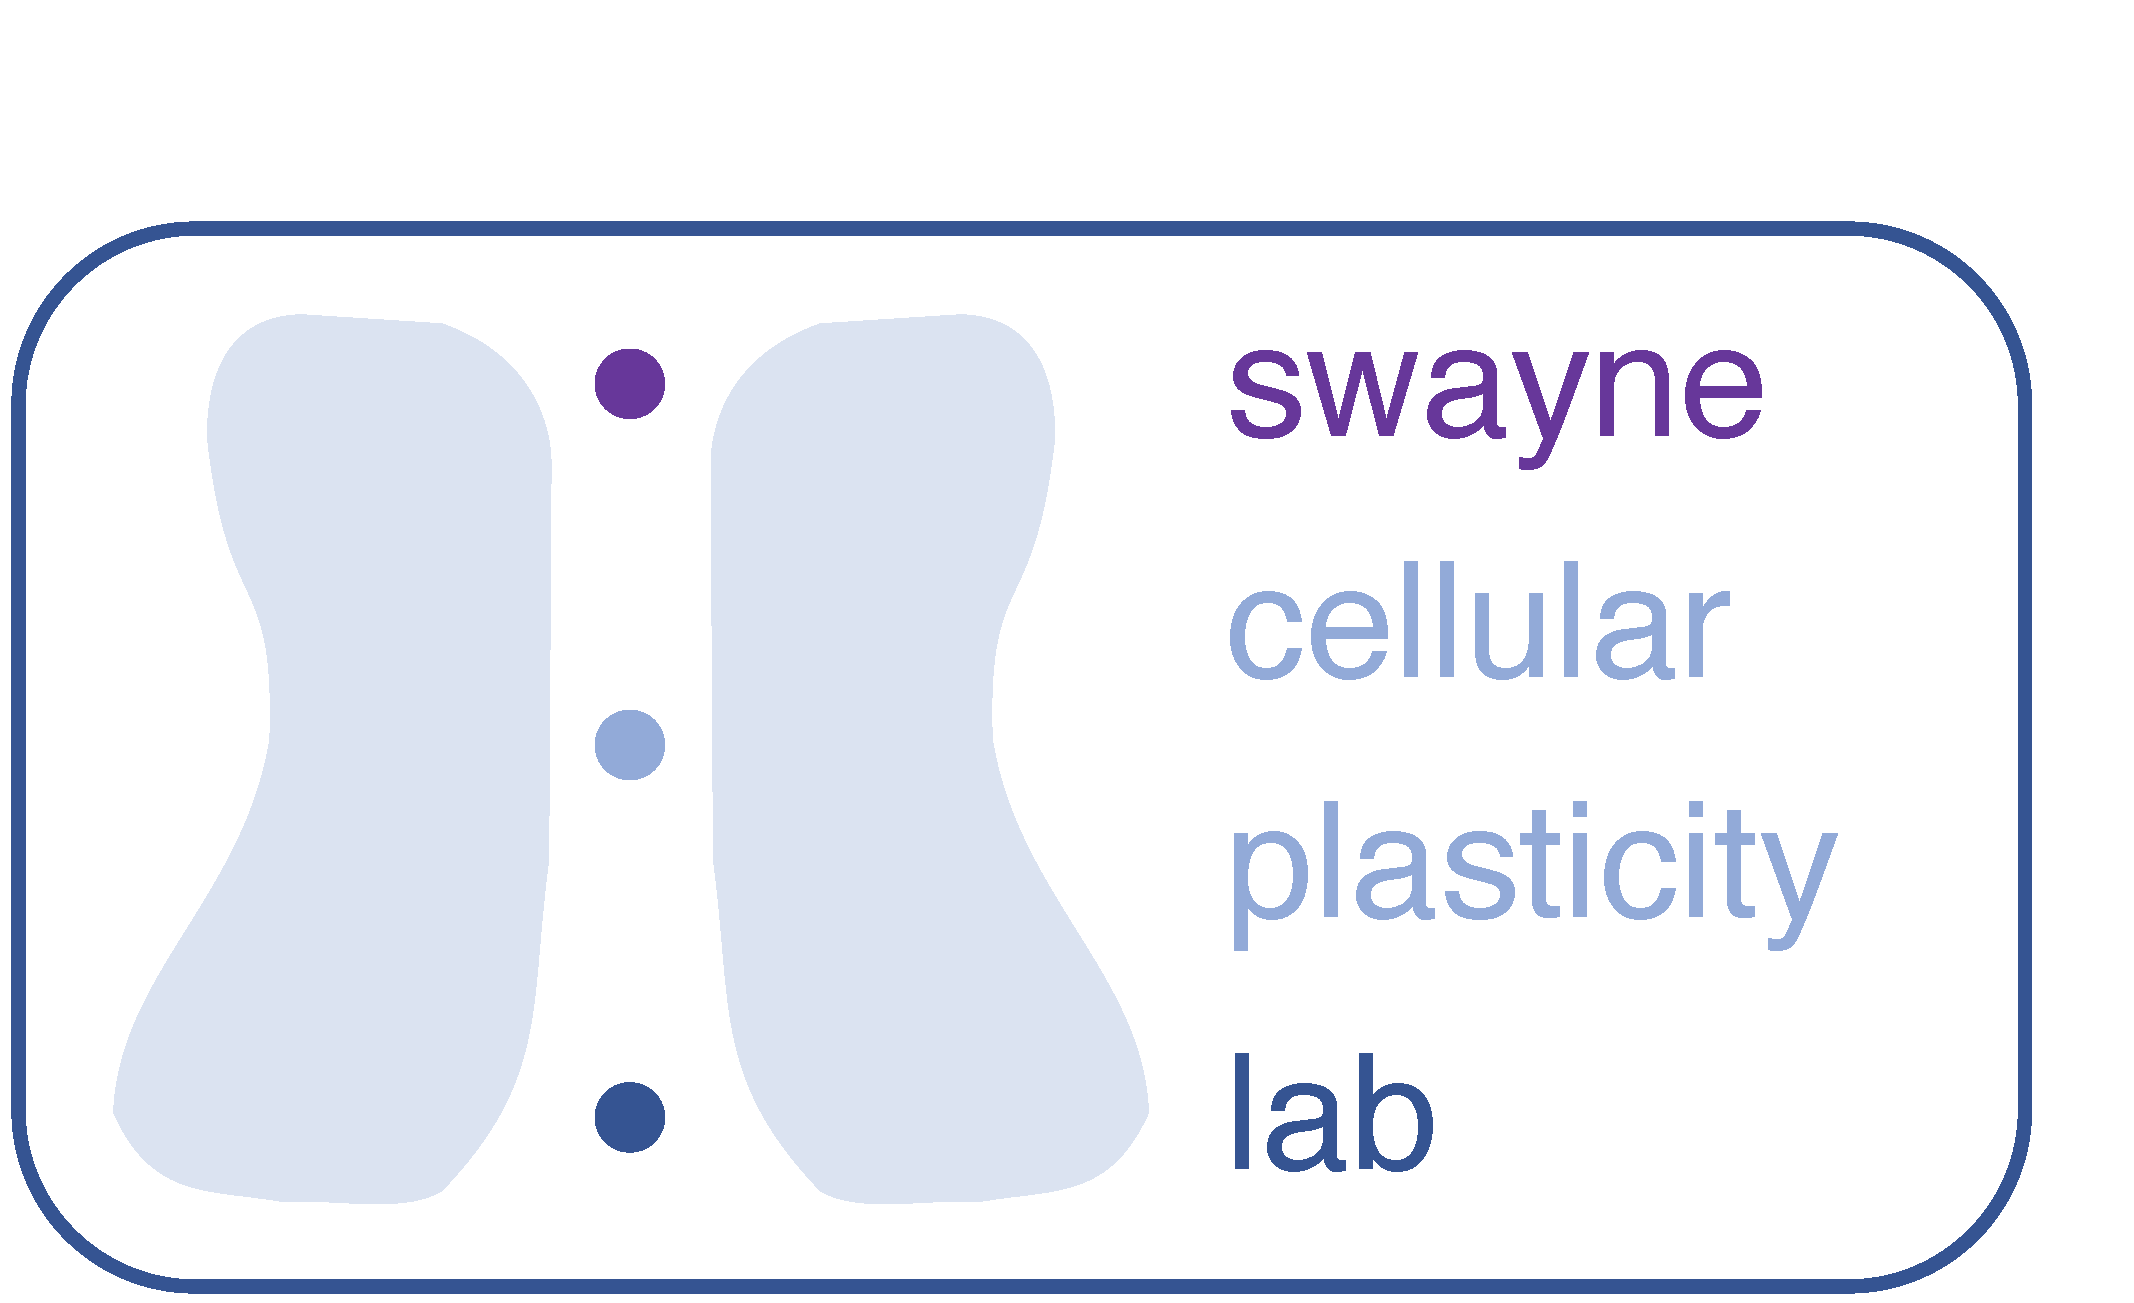 swayne lab